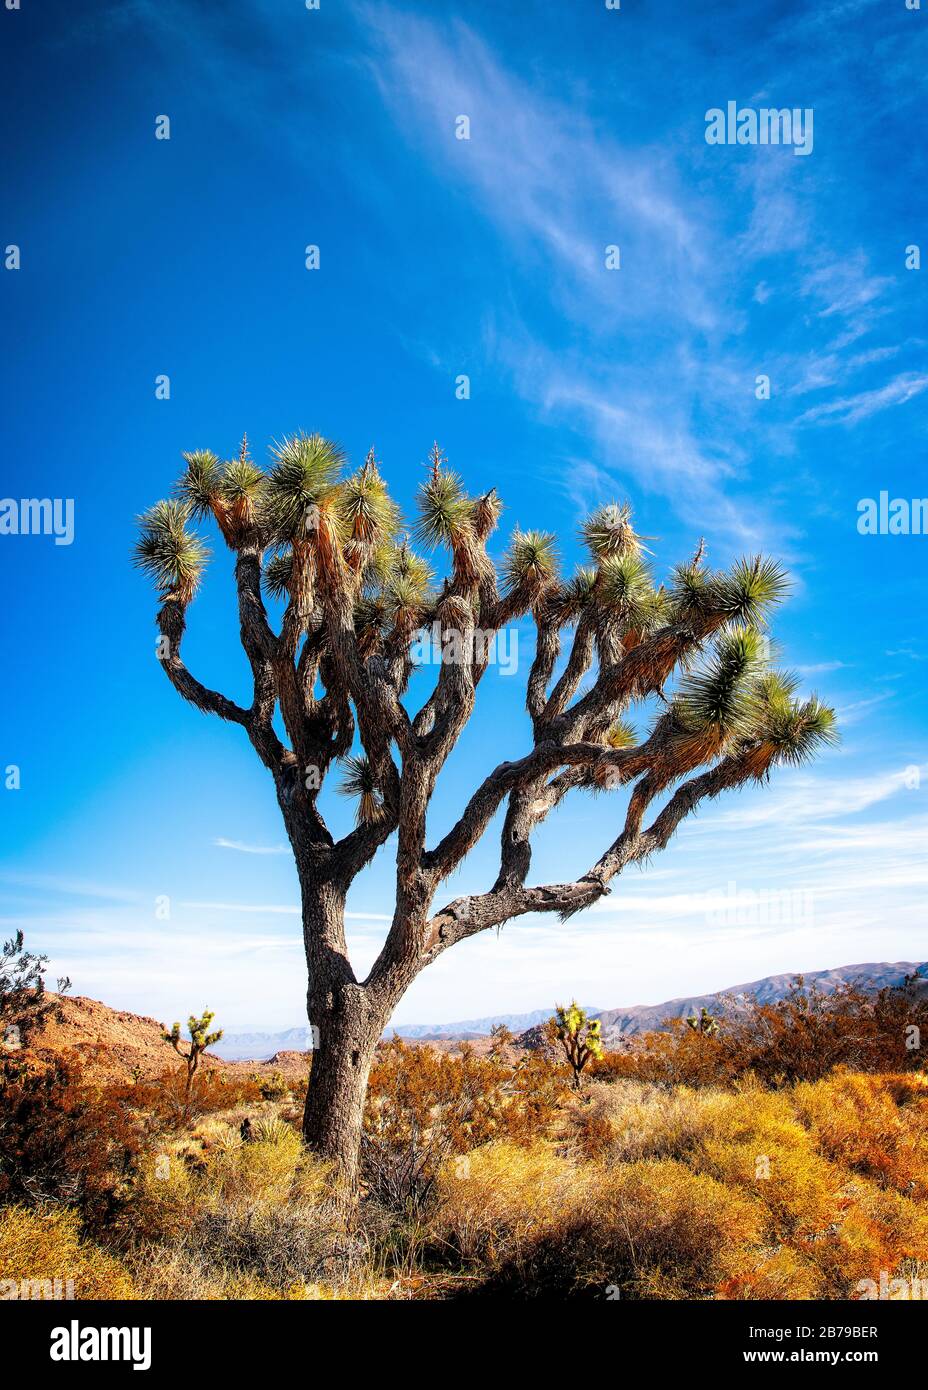 Les arbres de Joshua sont les plantes caractéristiques dans le paysage du parc national de Joshua Tree, en Californie. Banque D'Images